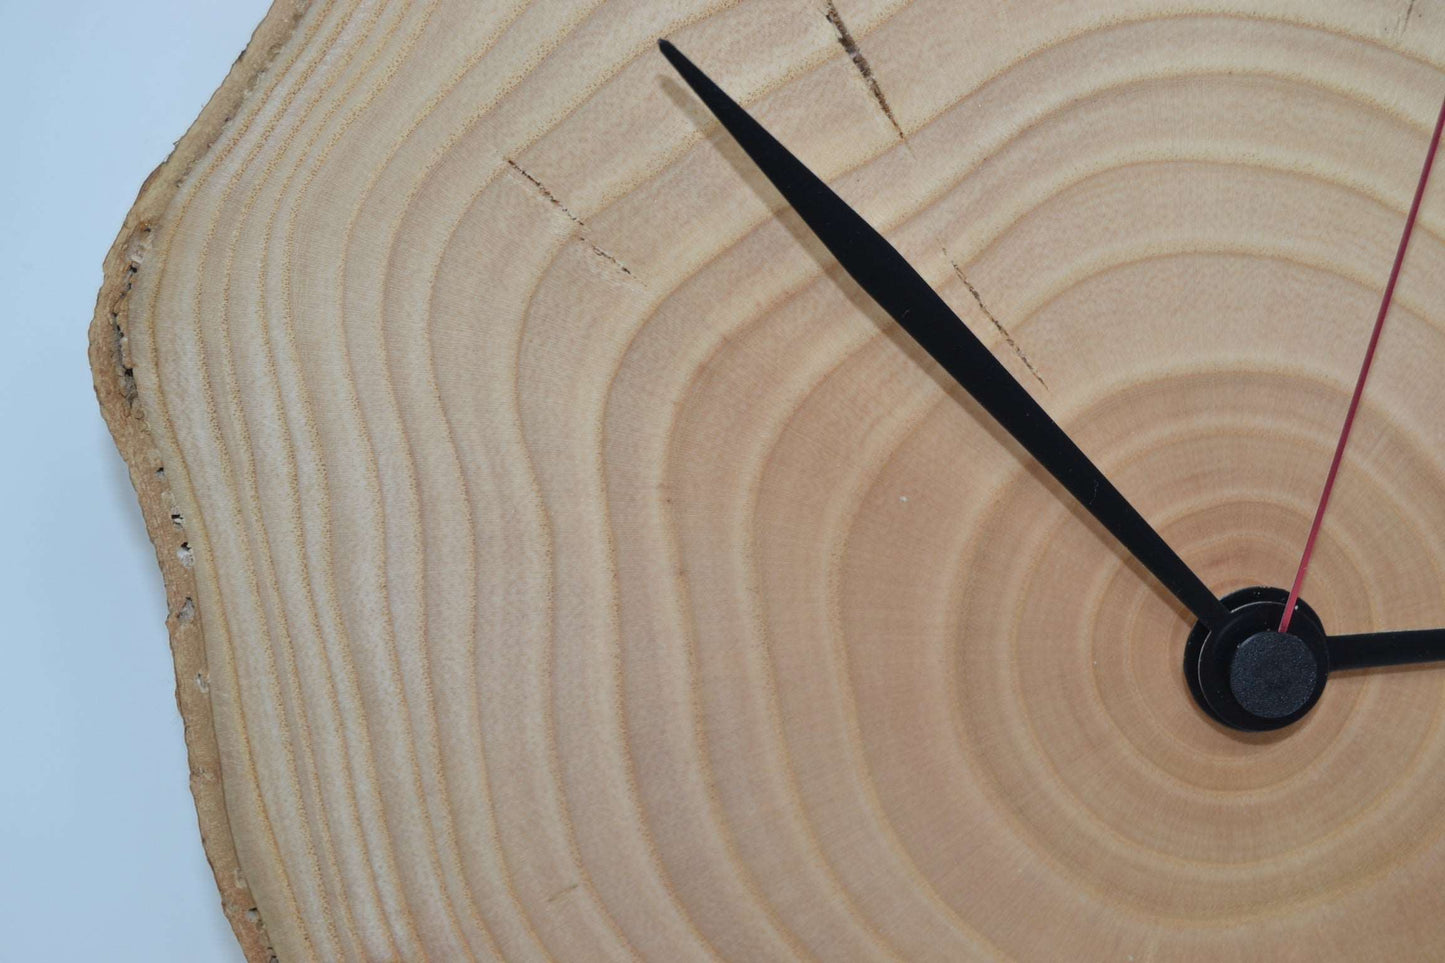 Holz Wanduhr 28x24cm aus Eschenholz Unikat Handarbeit